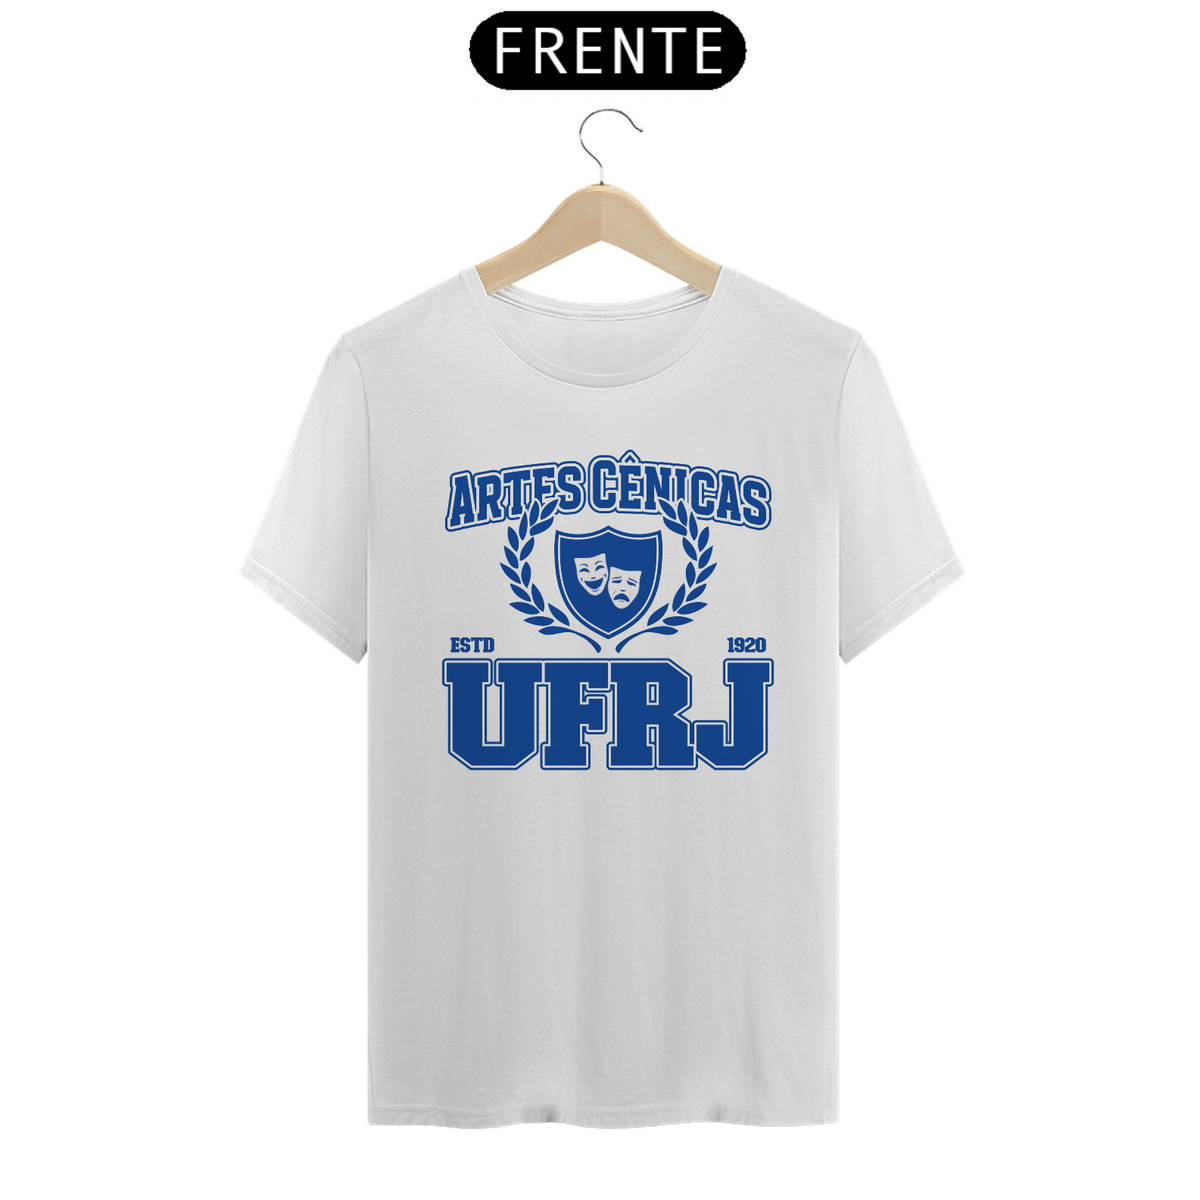 Nome do produto: UniVerso- Artes Cênicas UFRJ